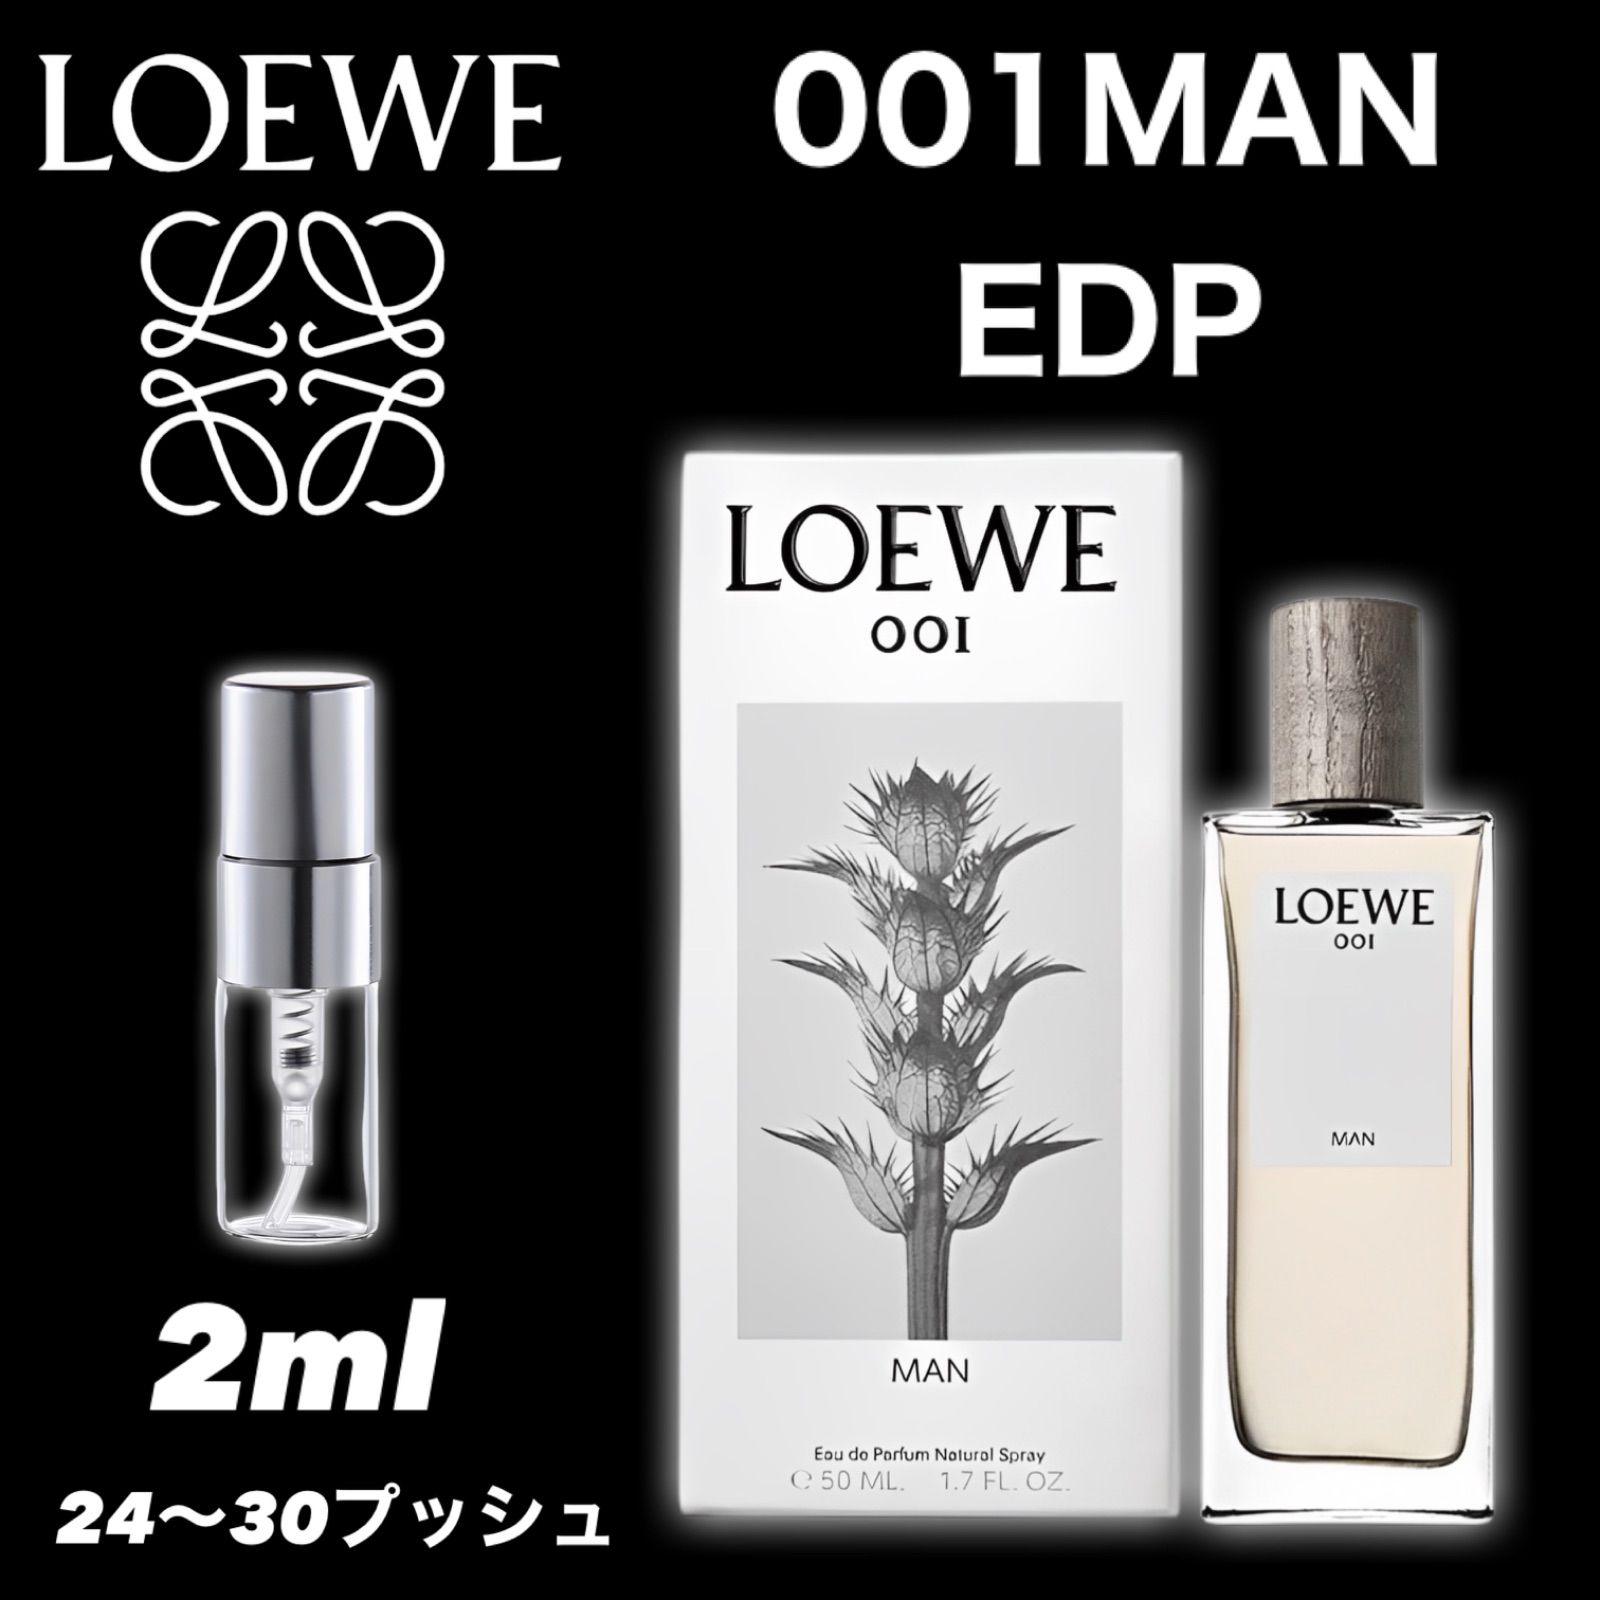 ロエベ 001 MAN WOMAN ペアセット 香水 サンプル - 香水(ユニセックス)